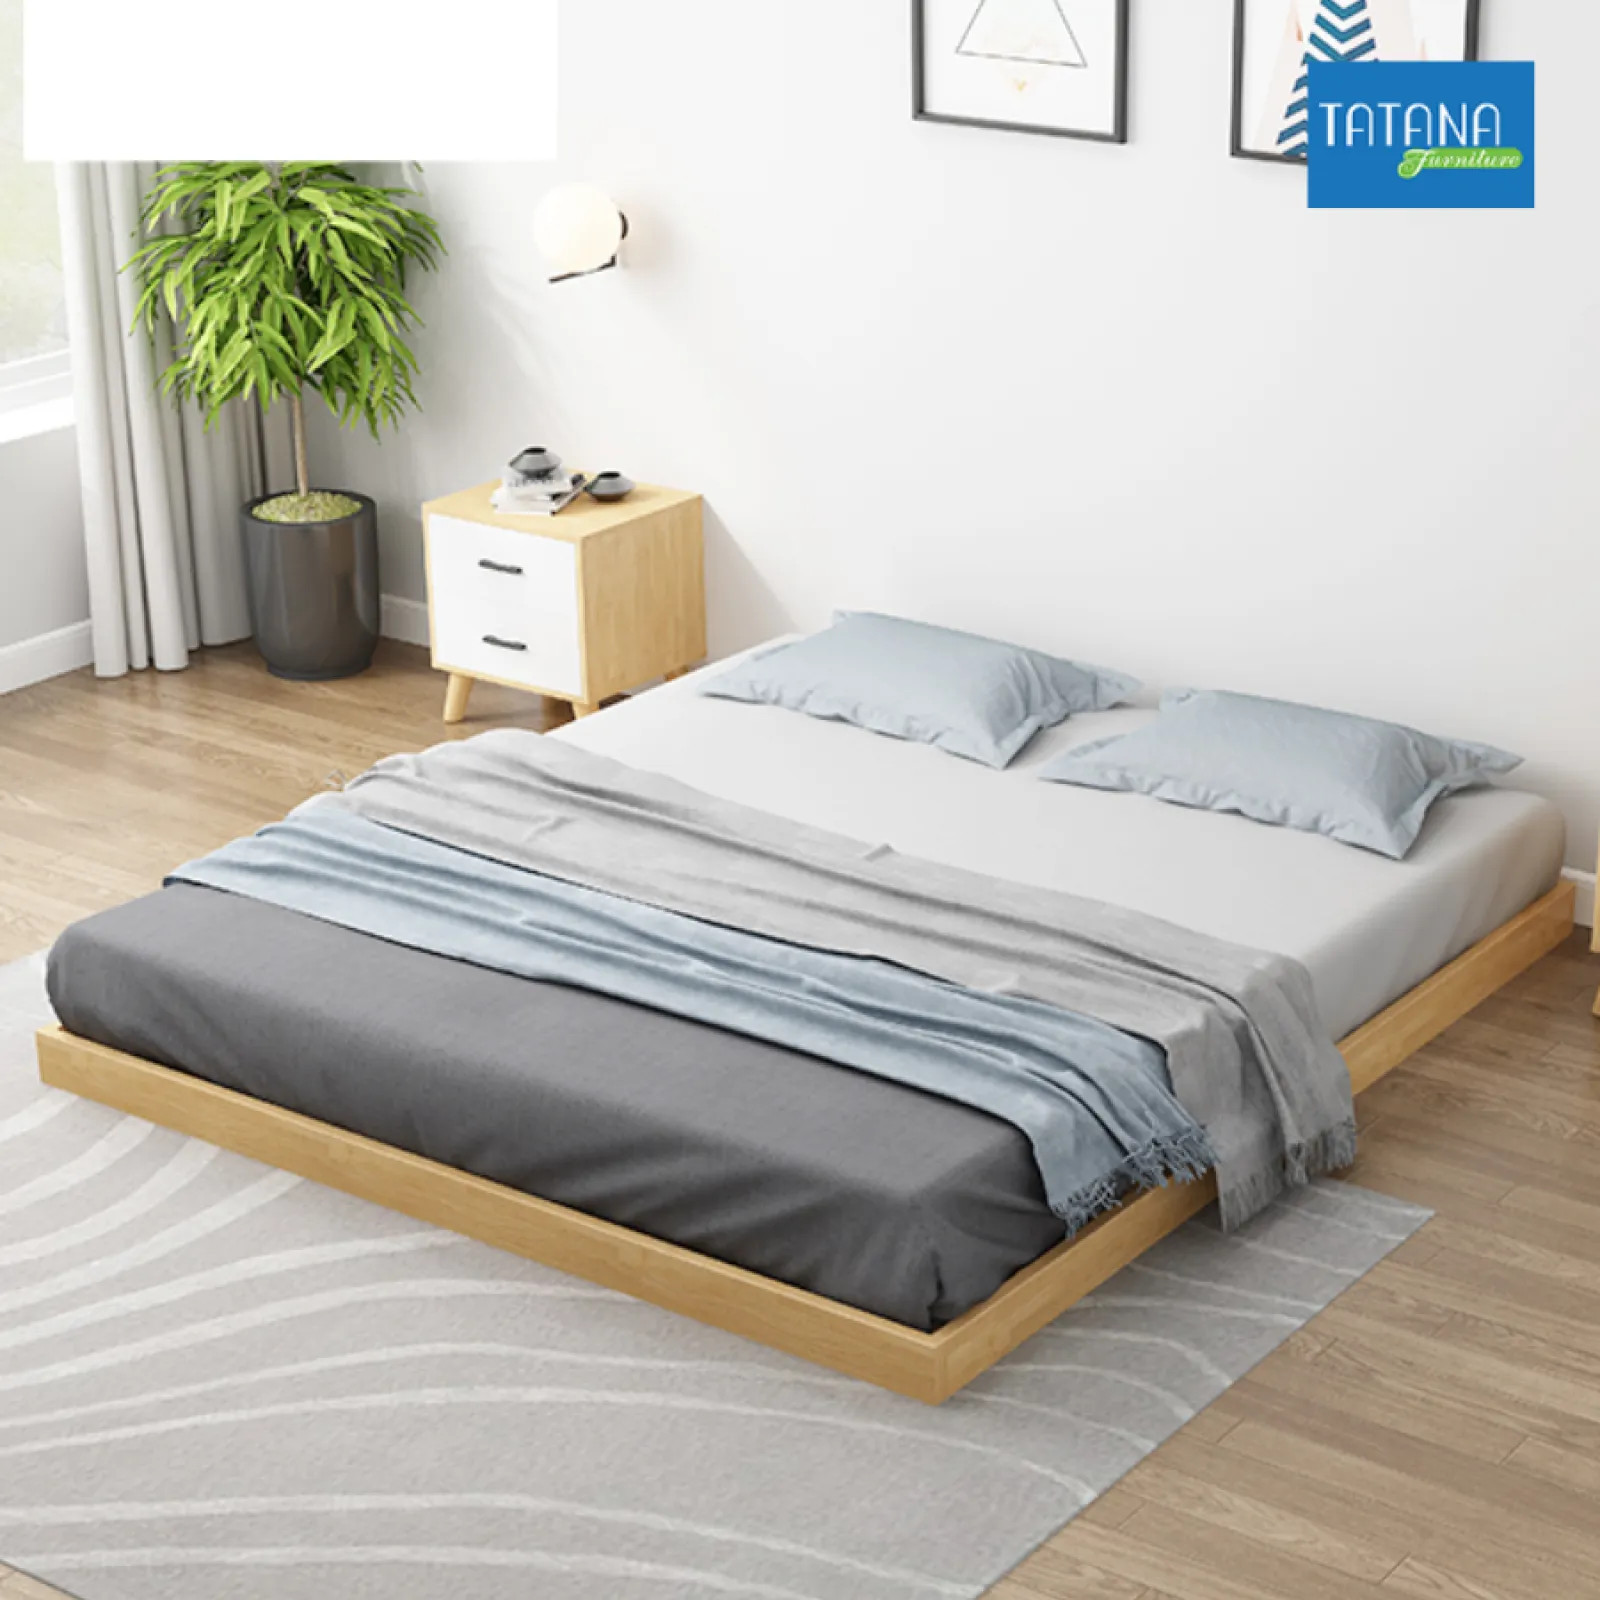 Giường gỗ, giường pallet Tatana MDF029